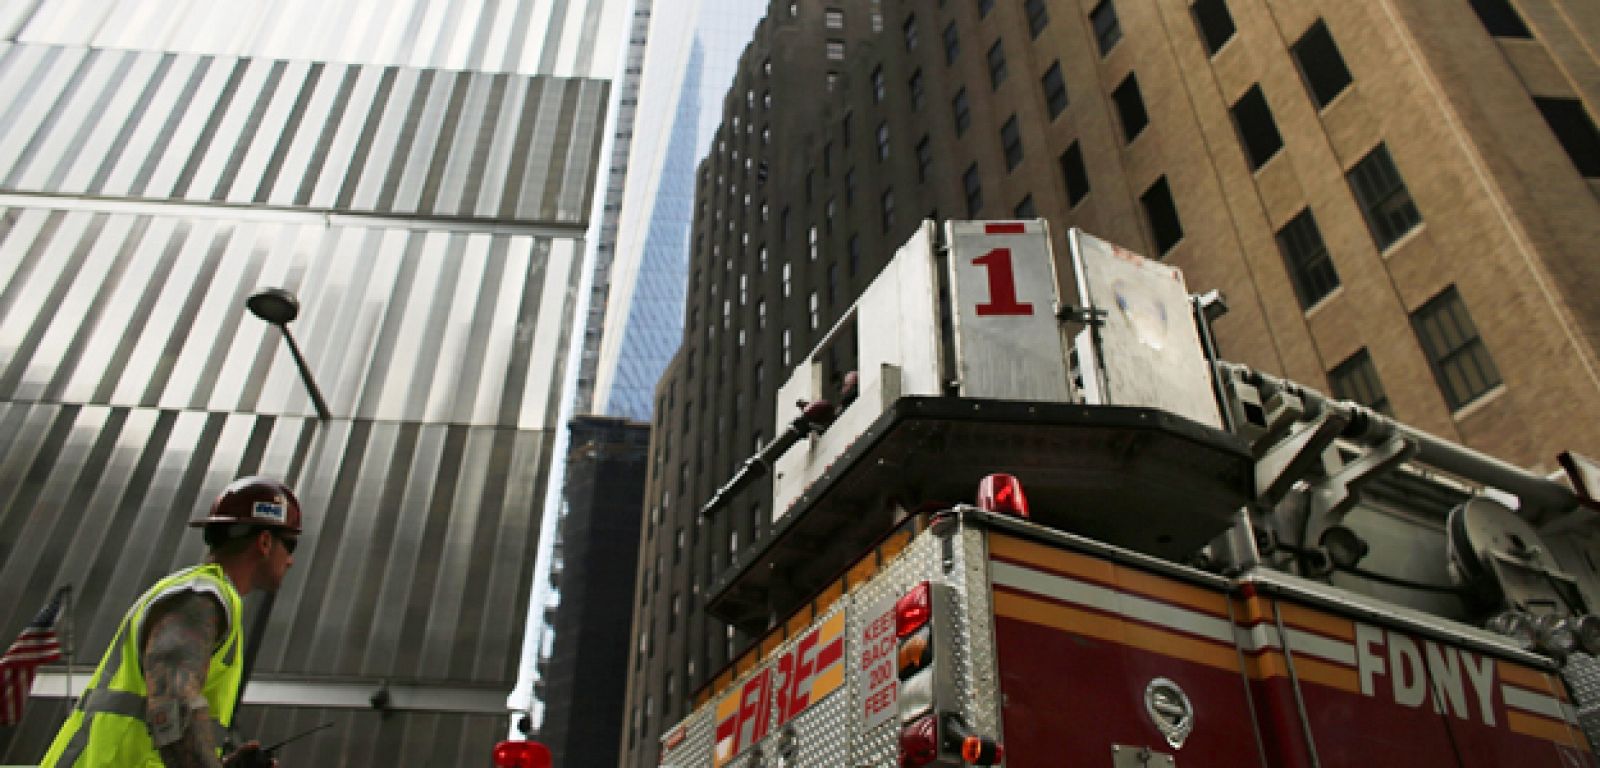 El incendio declarado en el edificio principal del World Trade Center (WTC), Torre de la Libertad, en Nueva York este miércoles, ha sido apagado sin causar heridos.